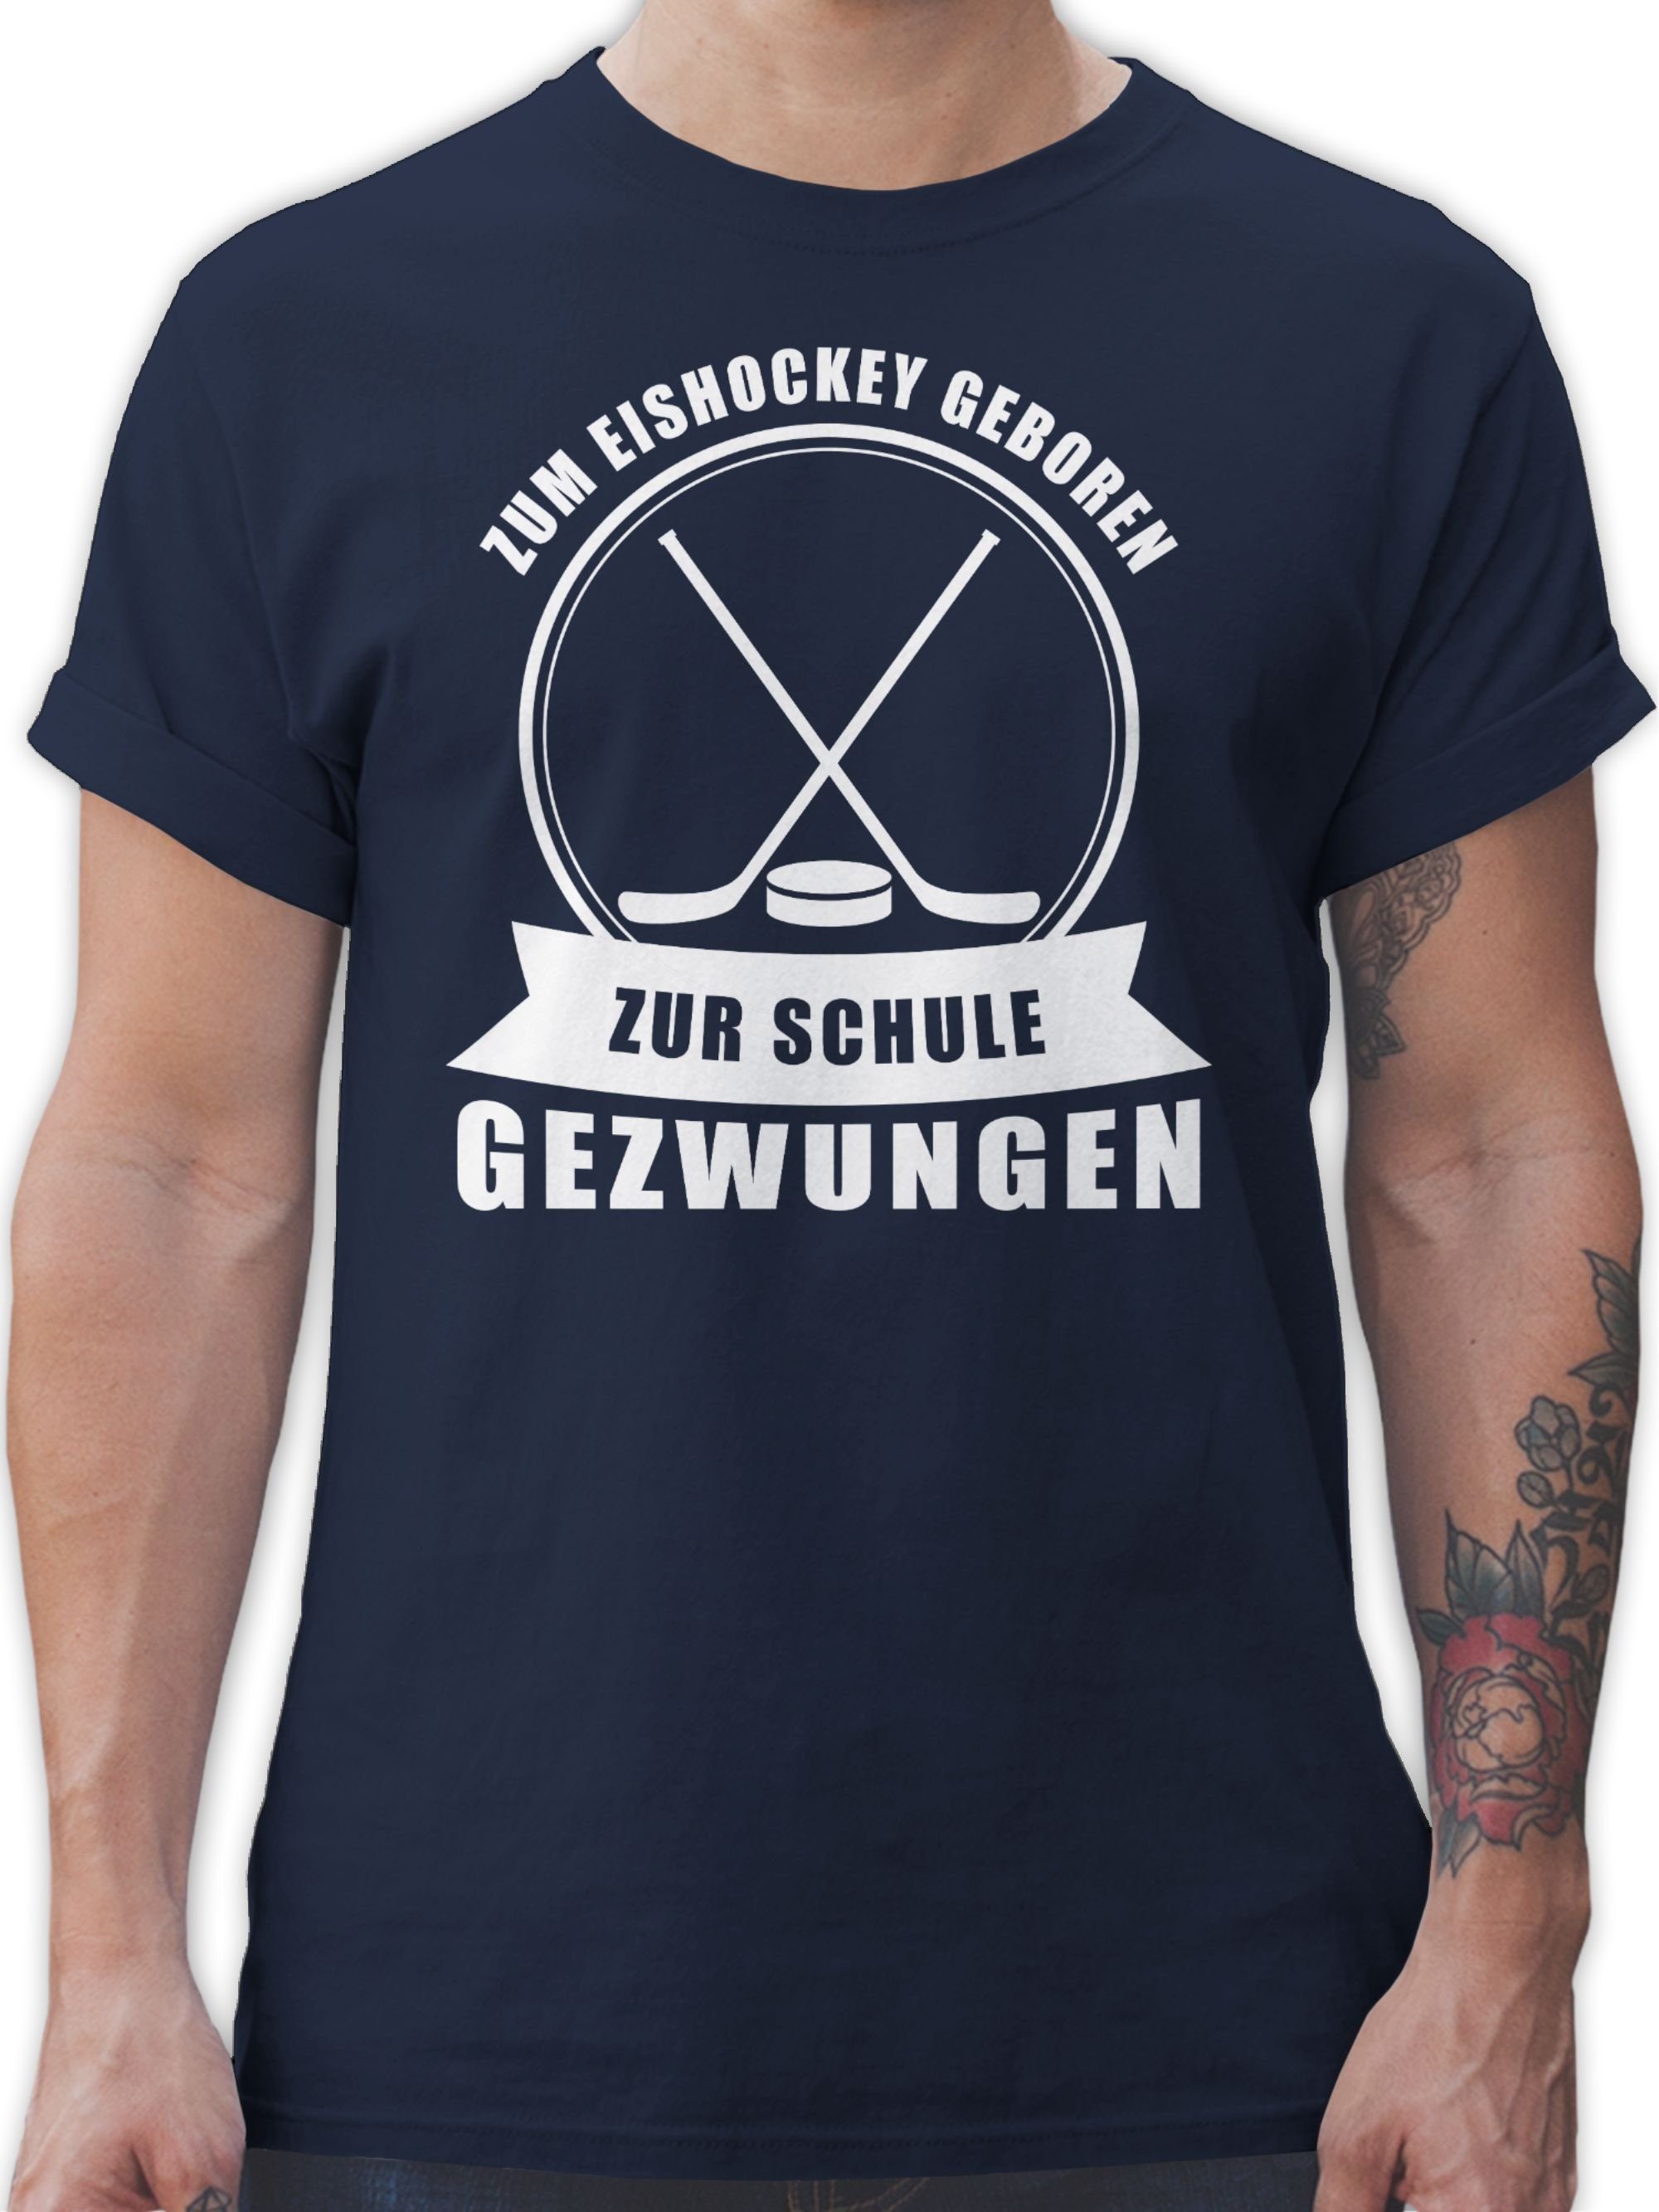 Zur Eishockey 2 Eishockey Blau Zum Navy geboren. T-Shirt gezwungen Shirtracer Schule